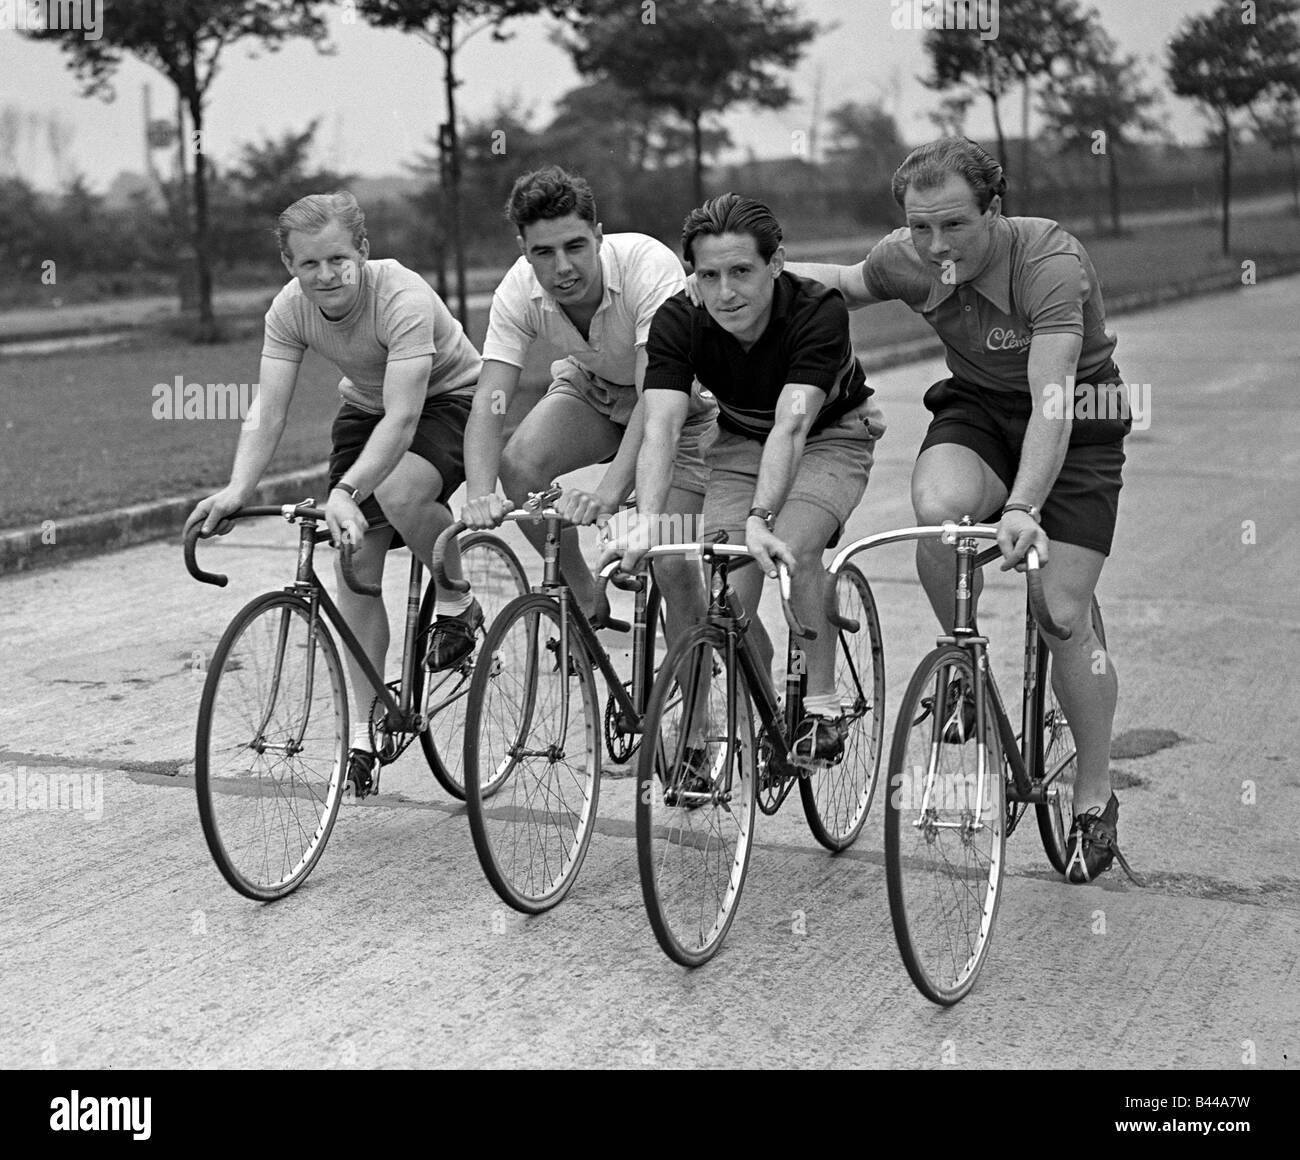 Olympic ciclista Reg Harris treni a destra sulla strada a sinistra a destra Bill Brown Norman colomba e George Lewis bici da corsa Foto Stock